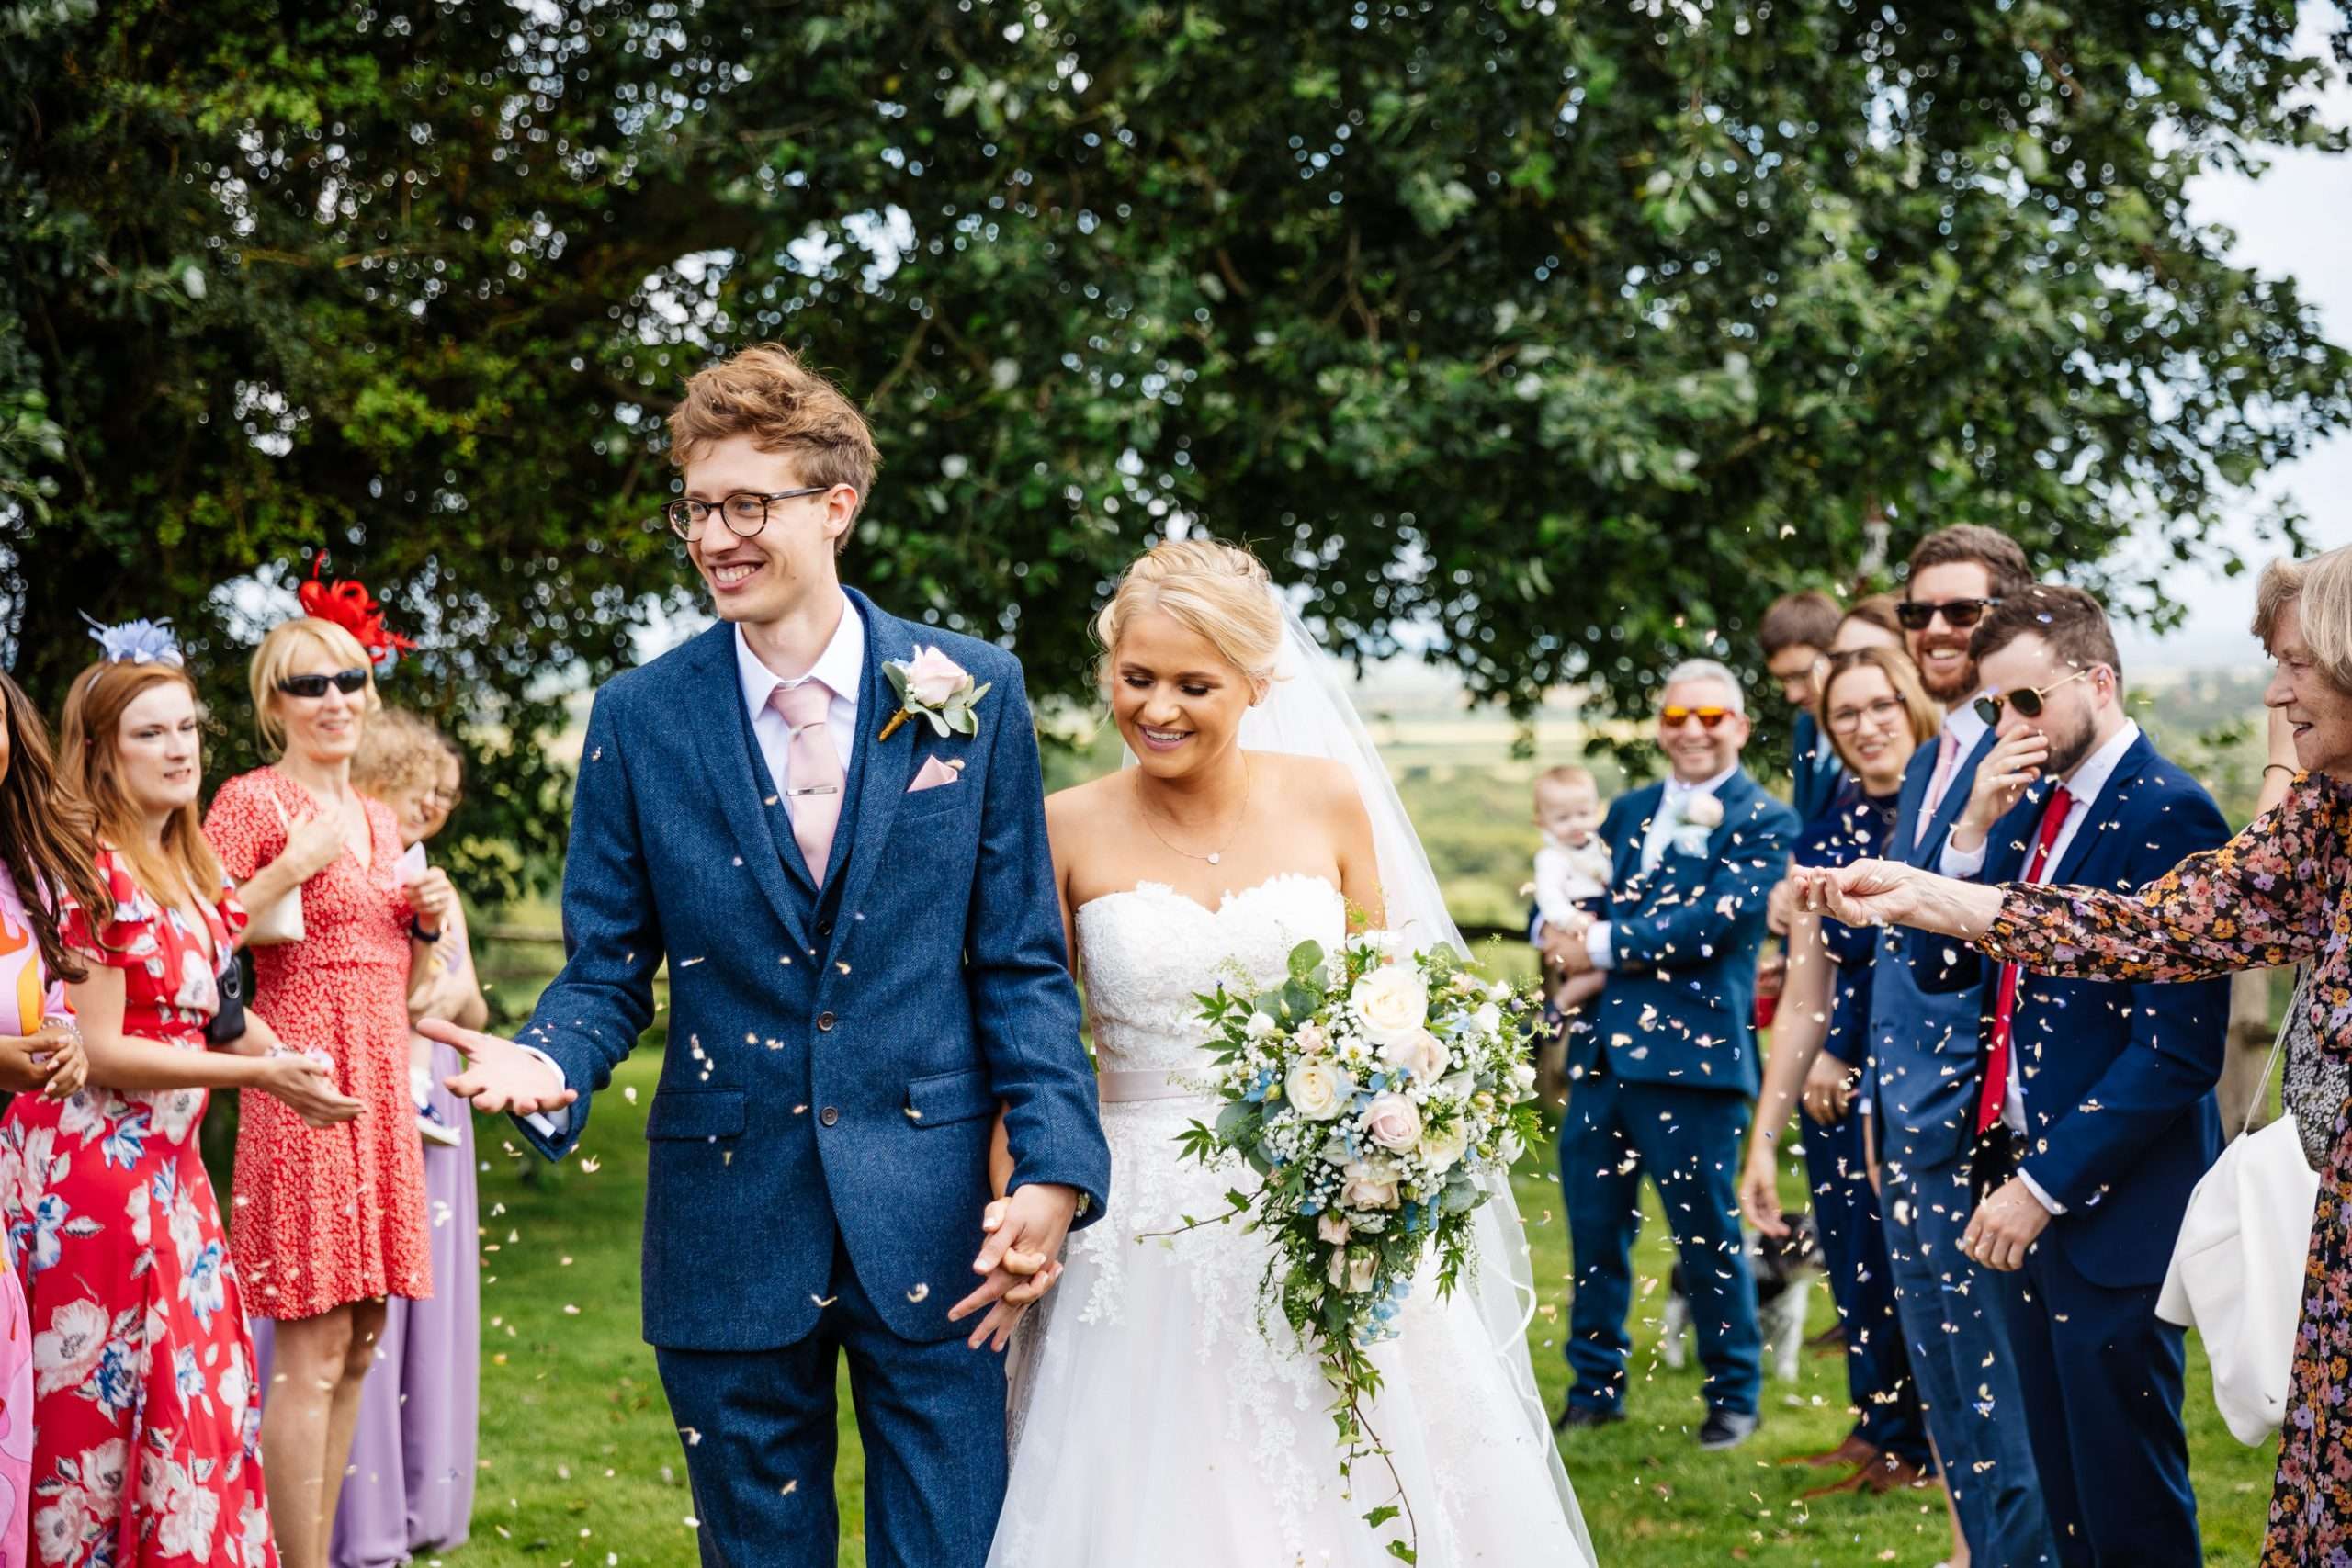 Montague Farm wedding, Sussex - Zoe & Peter